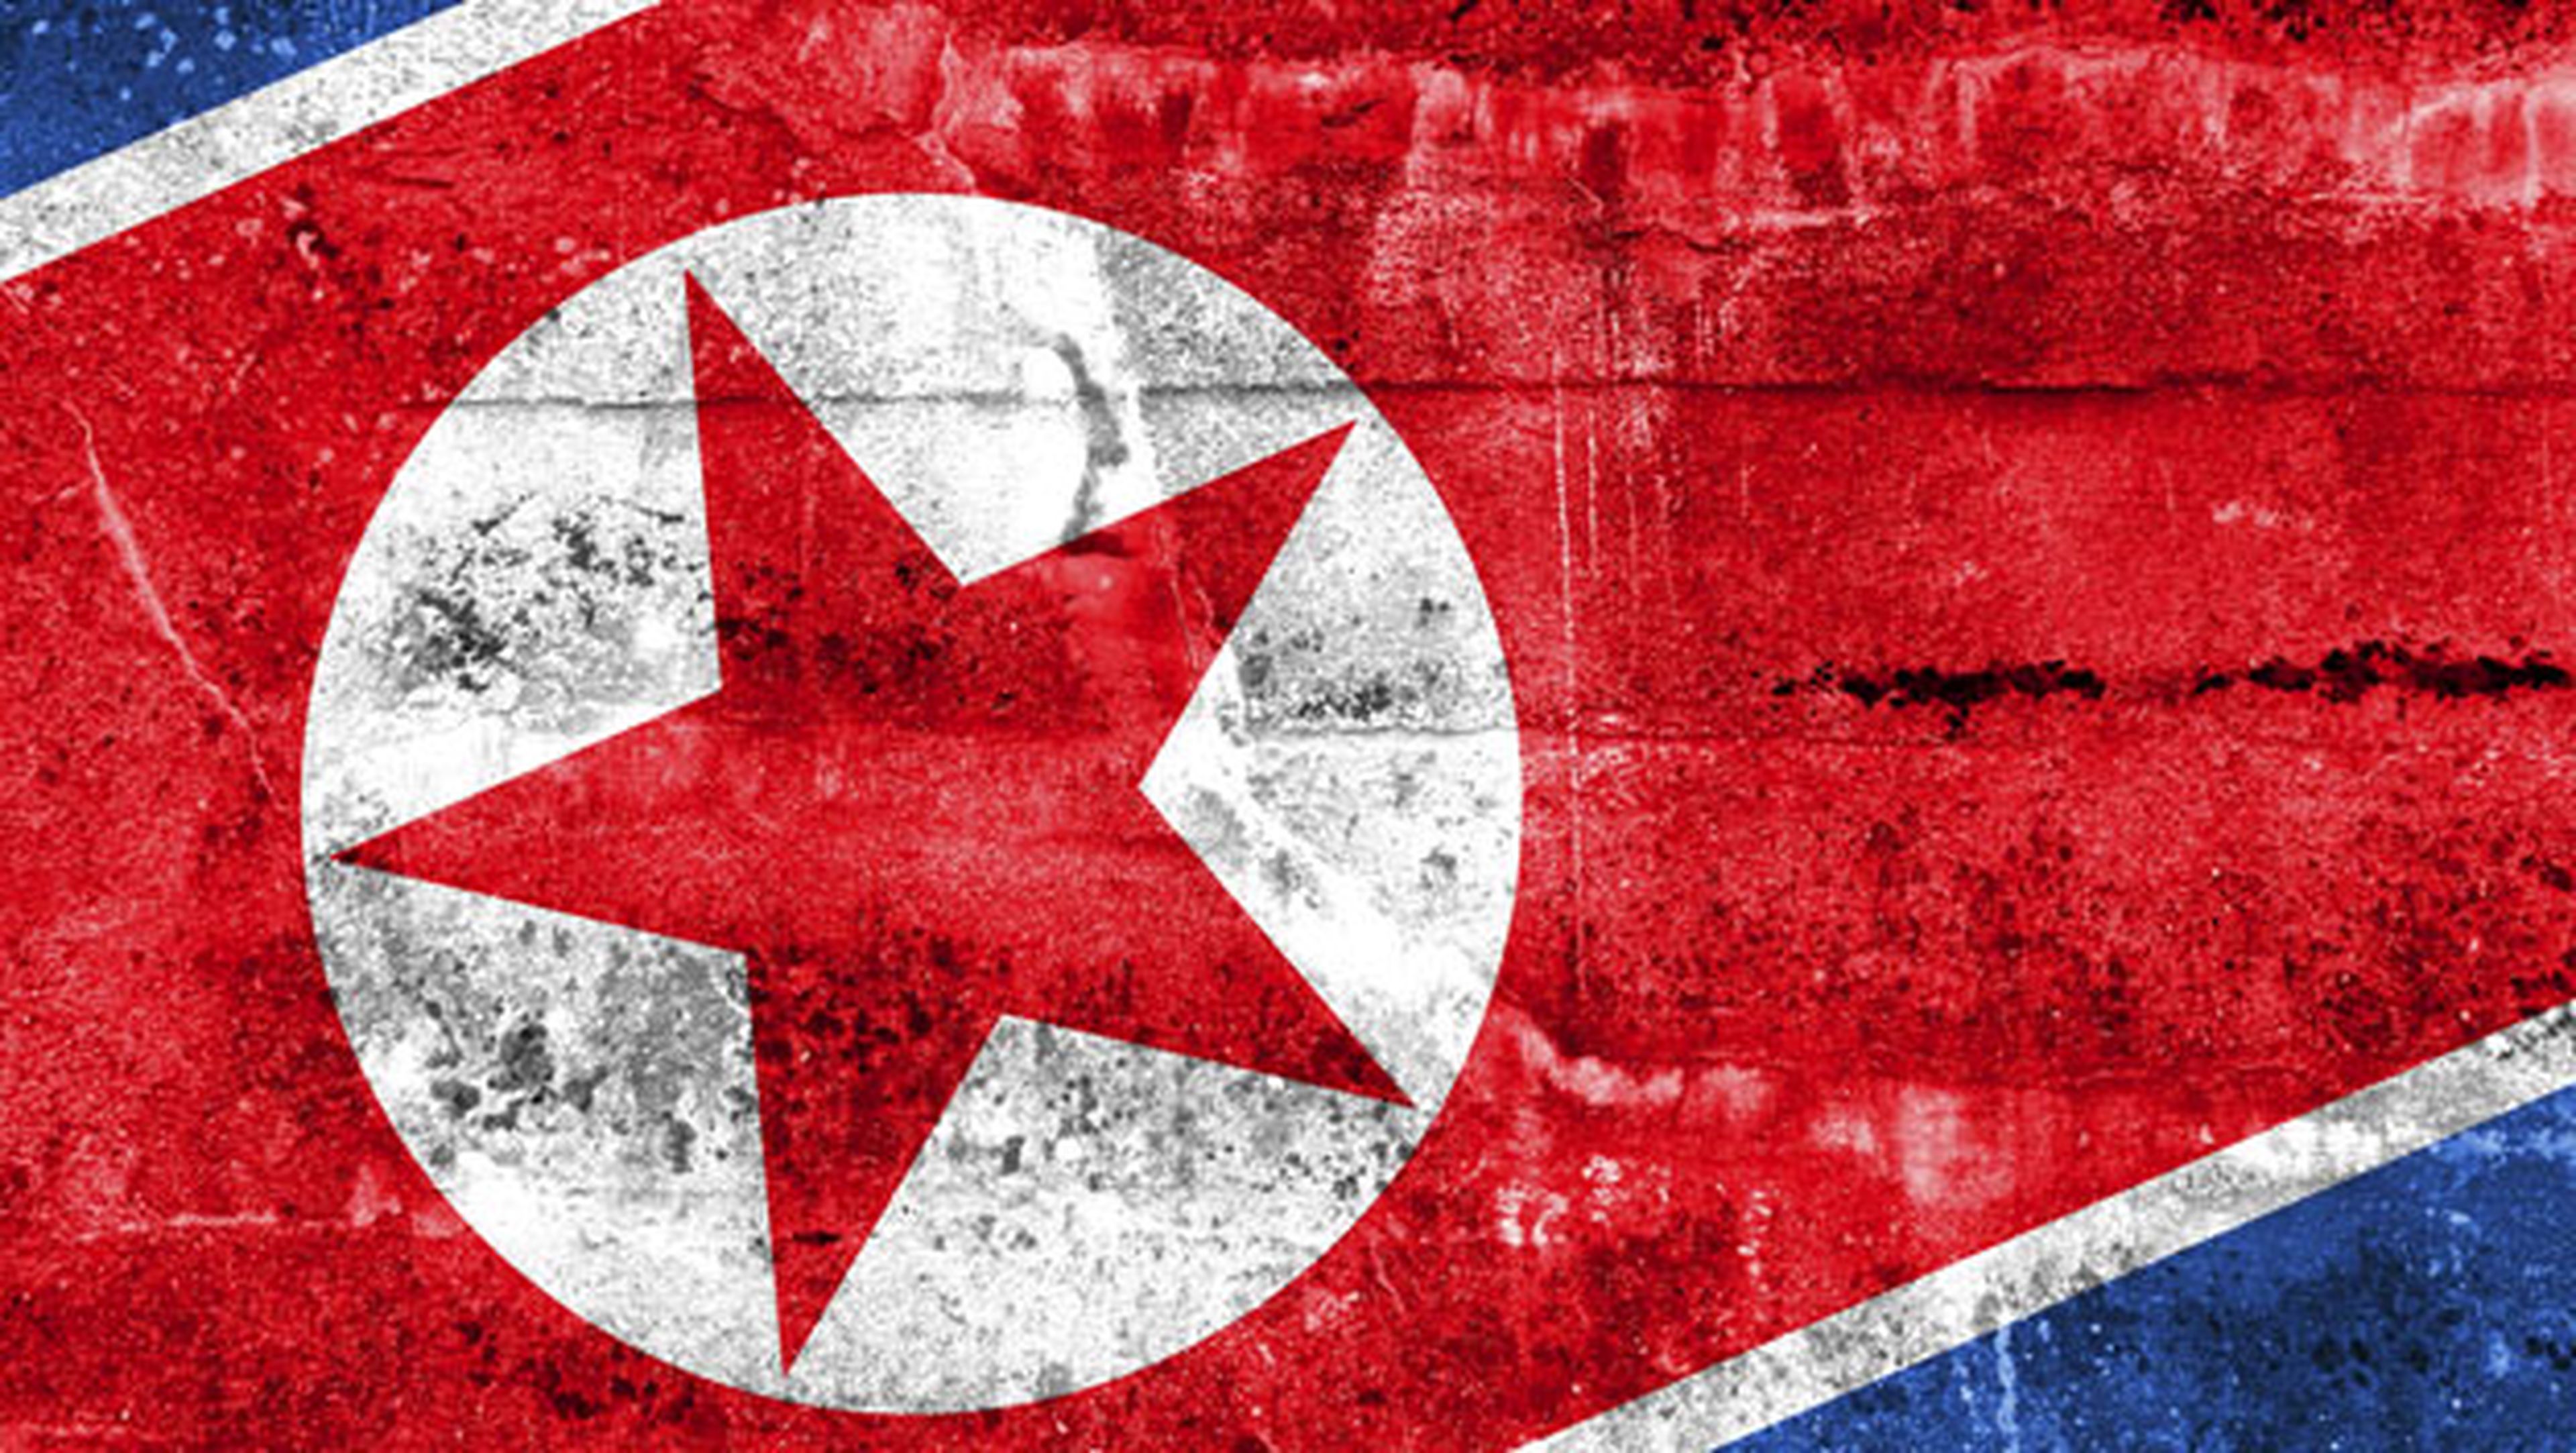 Encuentras rastros de Corea del Norte en el ataque ransomware de WannaCry